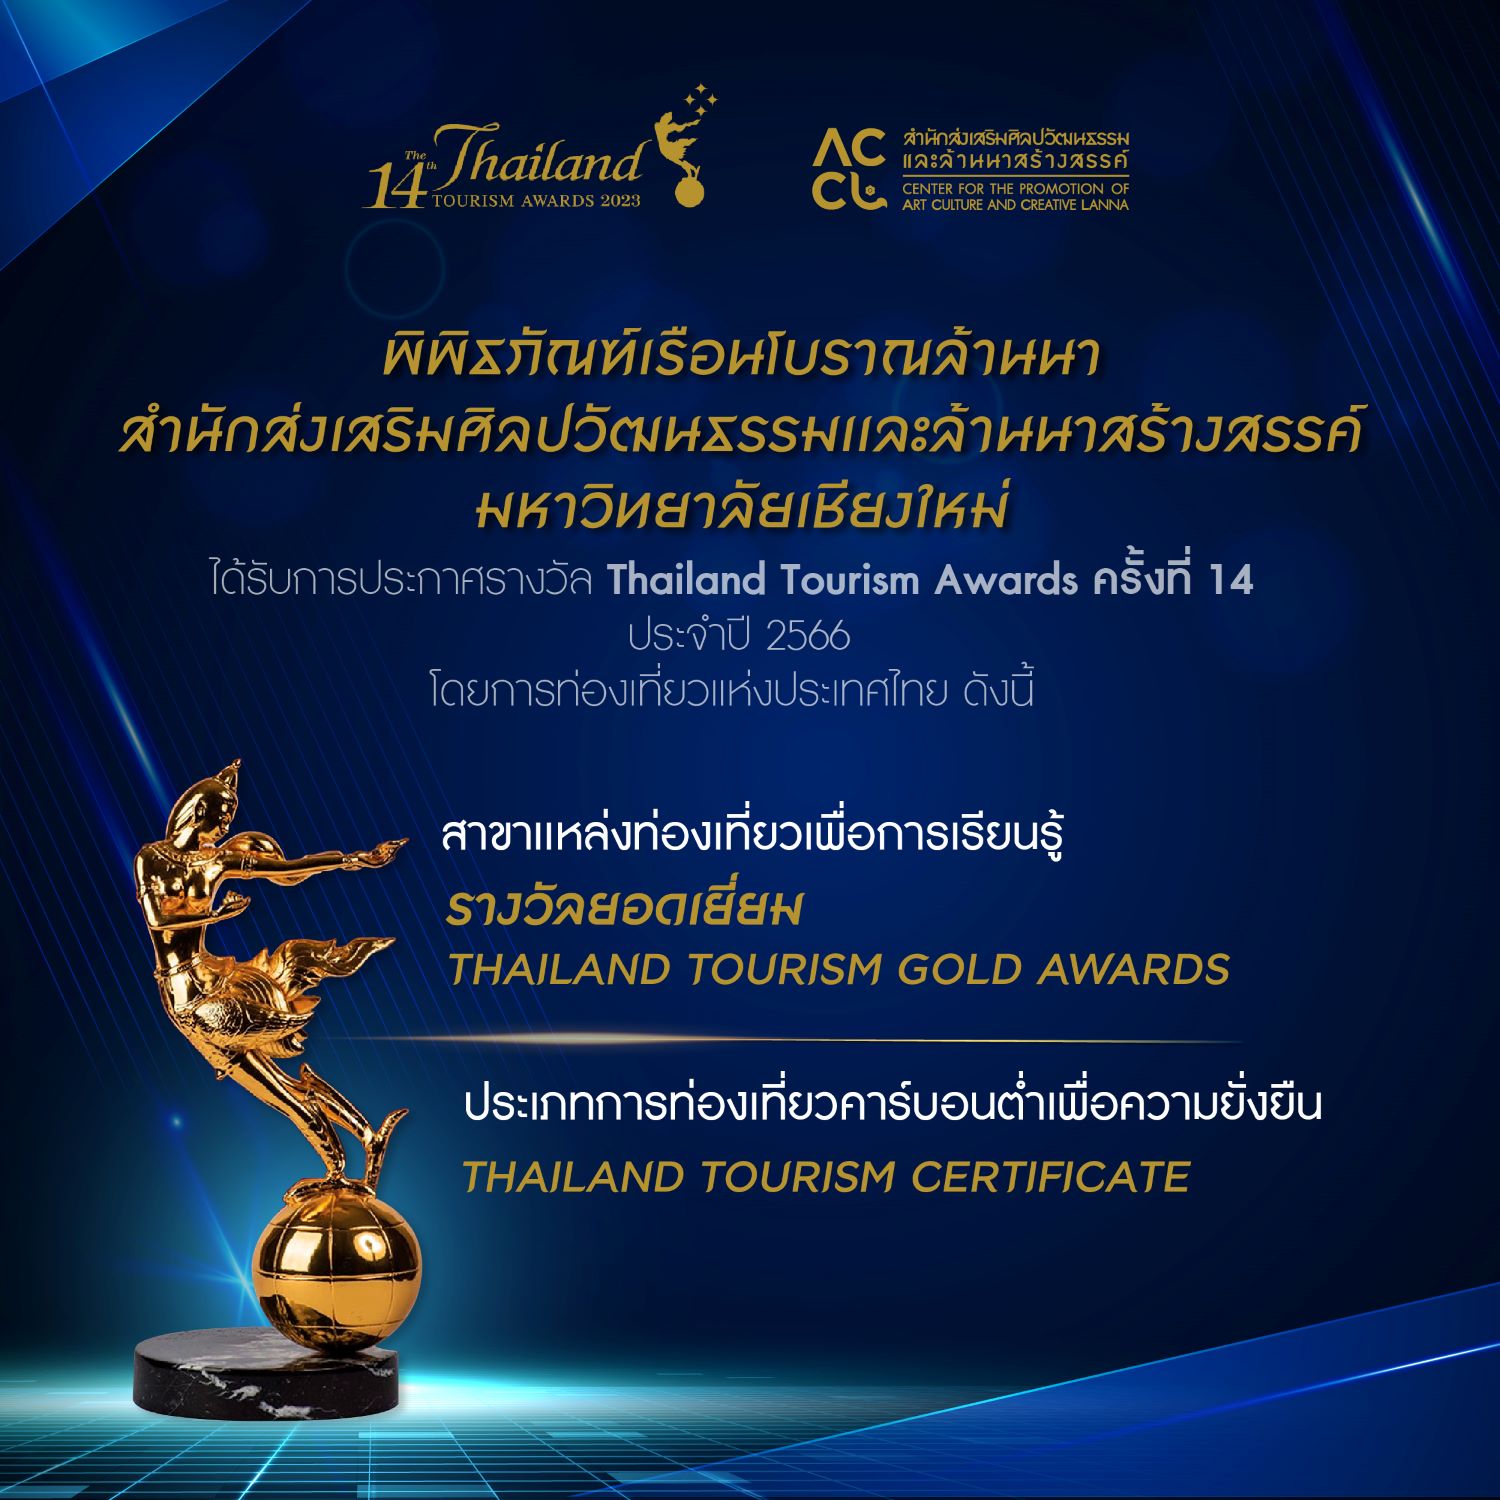 พิพิธภัณฑ์เรือนโบราณล้านนา มช.  ได้รับรางวัล Thailand Tourism Awards ครั้งที่ 14 ประจำปี 2566